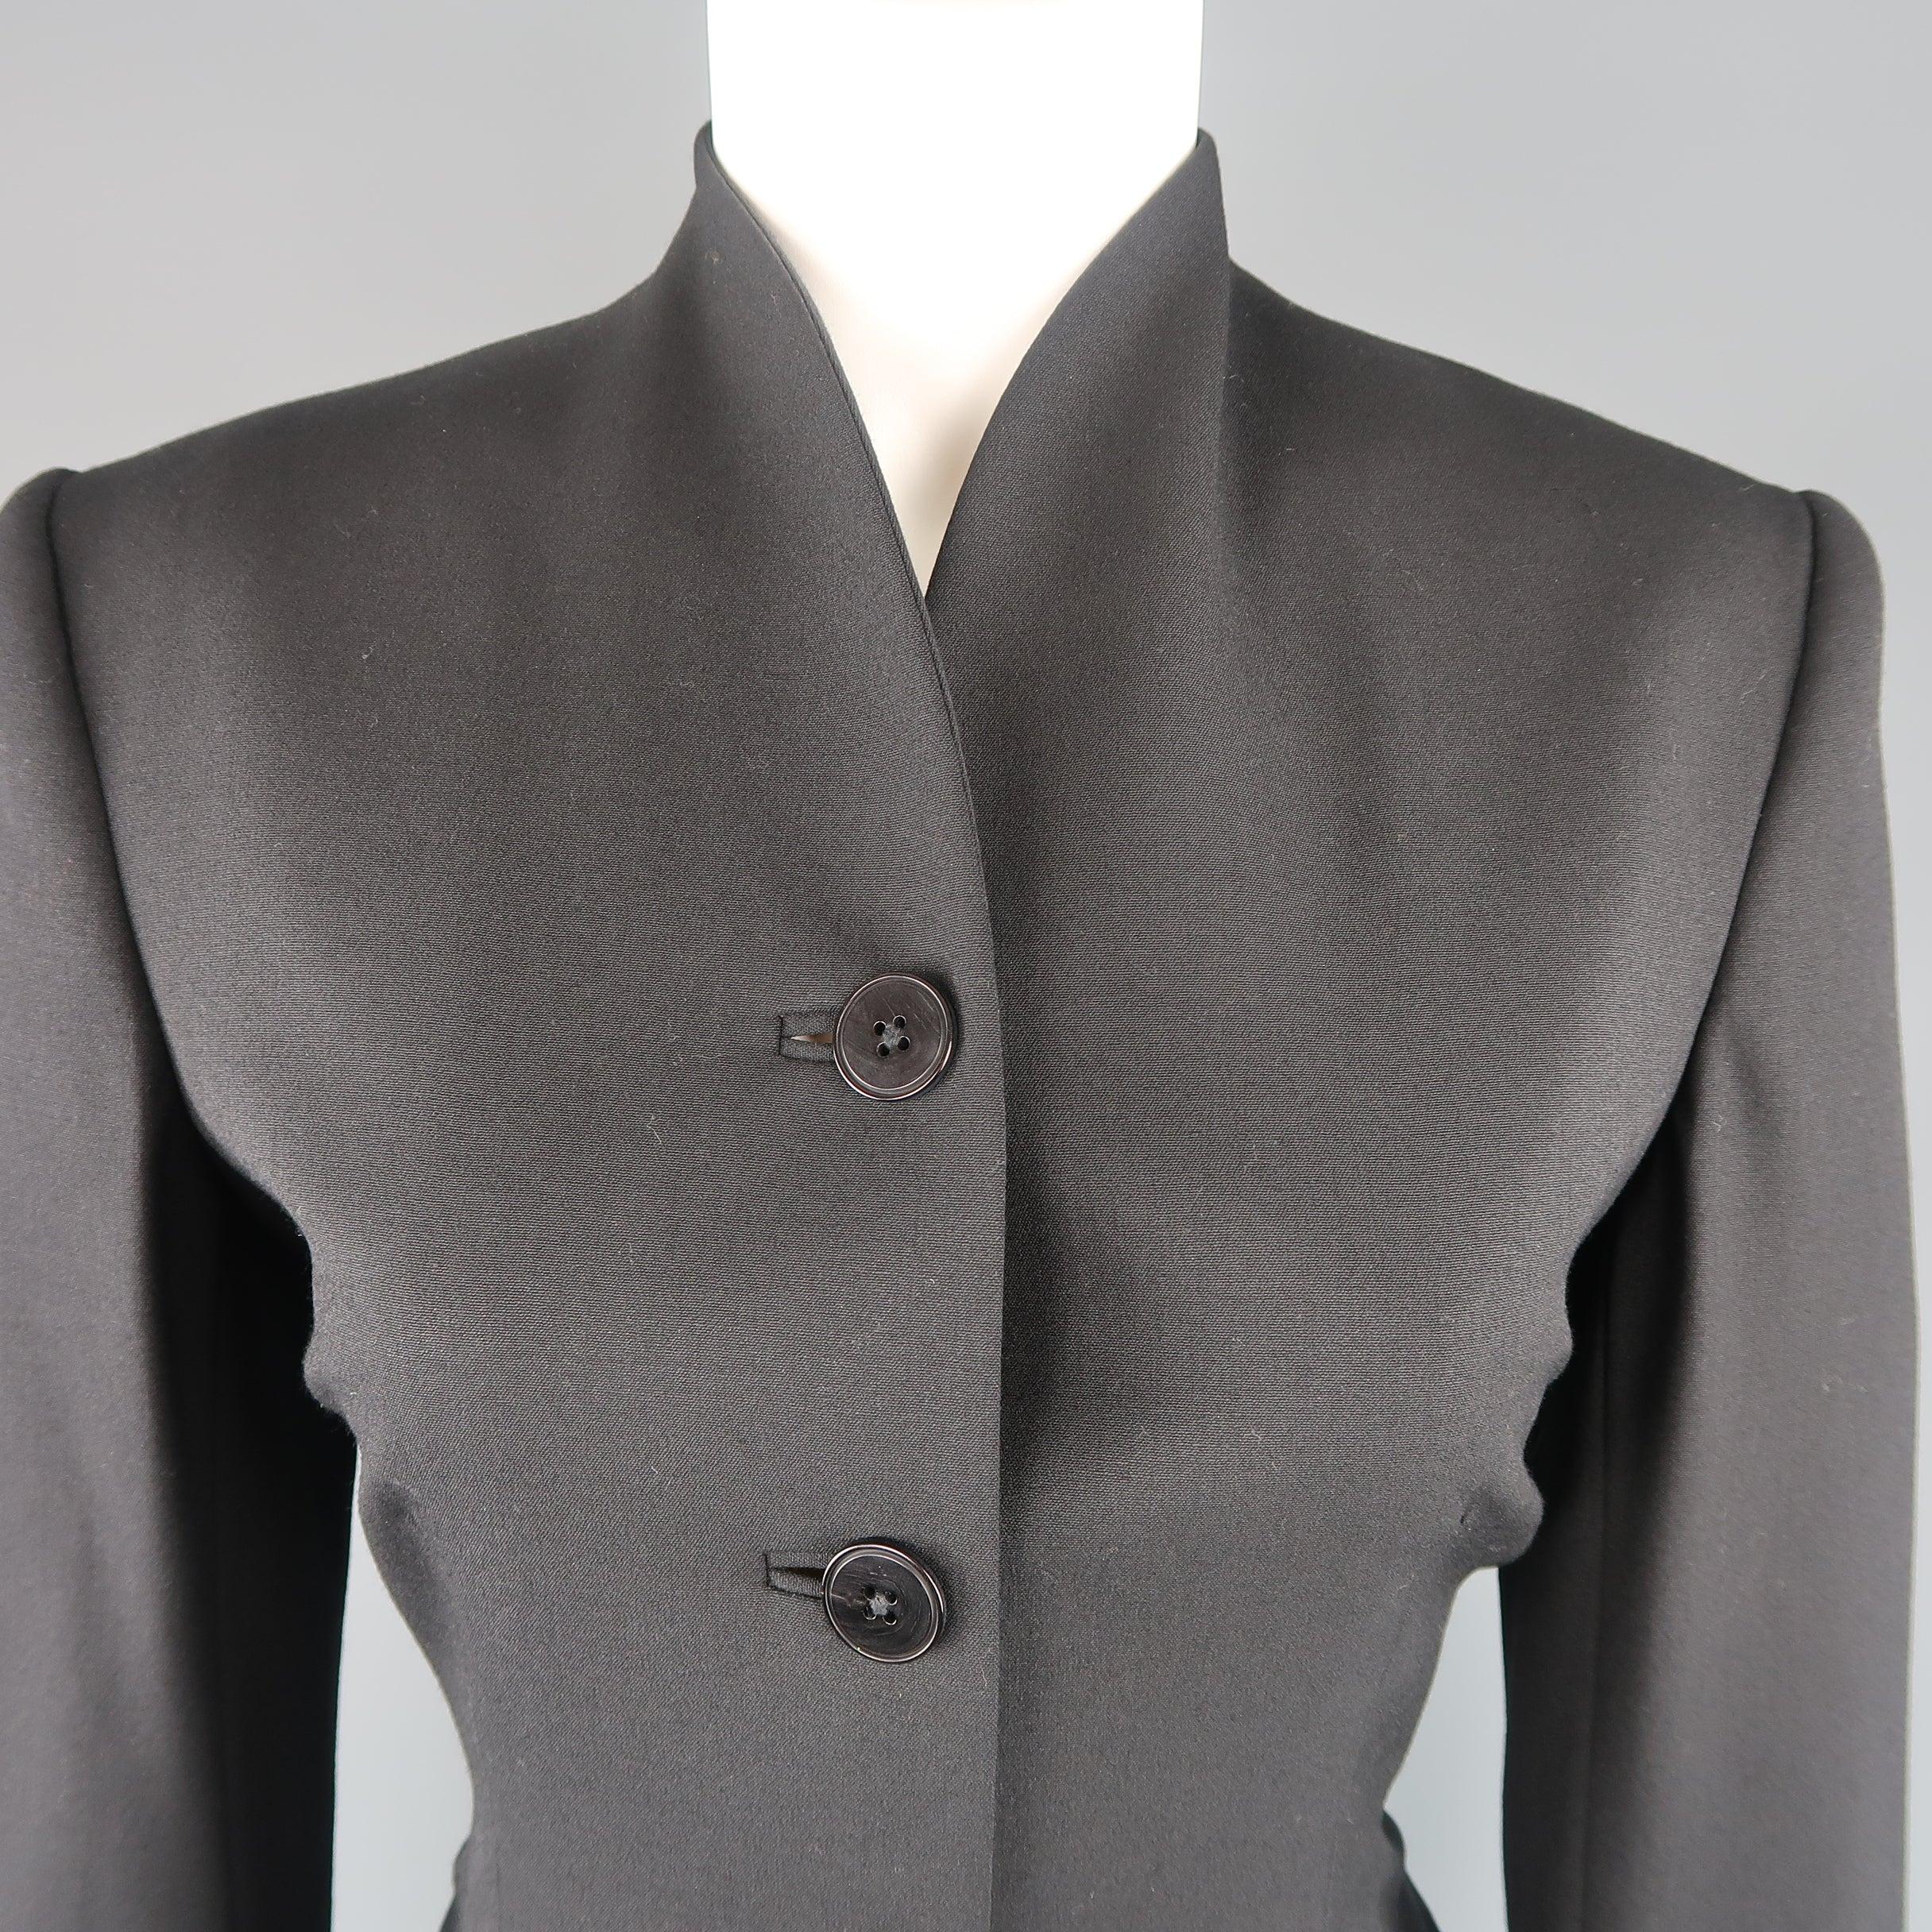 RALPH LAUREN BLACK LABEL Jacke aus schwarzer Wolle mit vier Knöpfen vorne, taillierter Silhouette und Stehkragen. Kleine Unvollkommenheit auf der Rückseite. Hergestellt in den USA.
Guter Pre-Owned Zustand.
 

Markiert:   6
 

Abmessungen: 
 